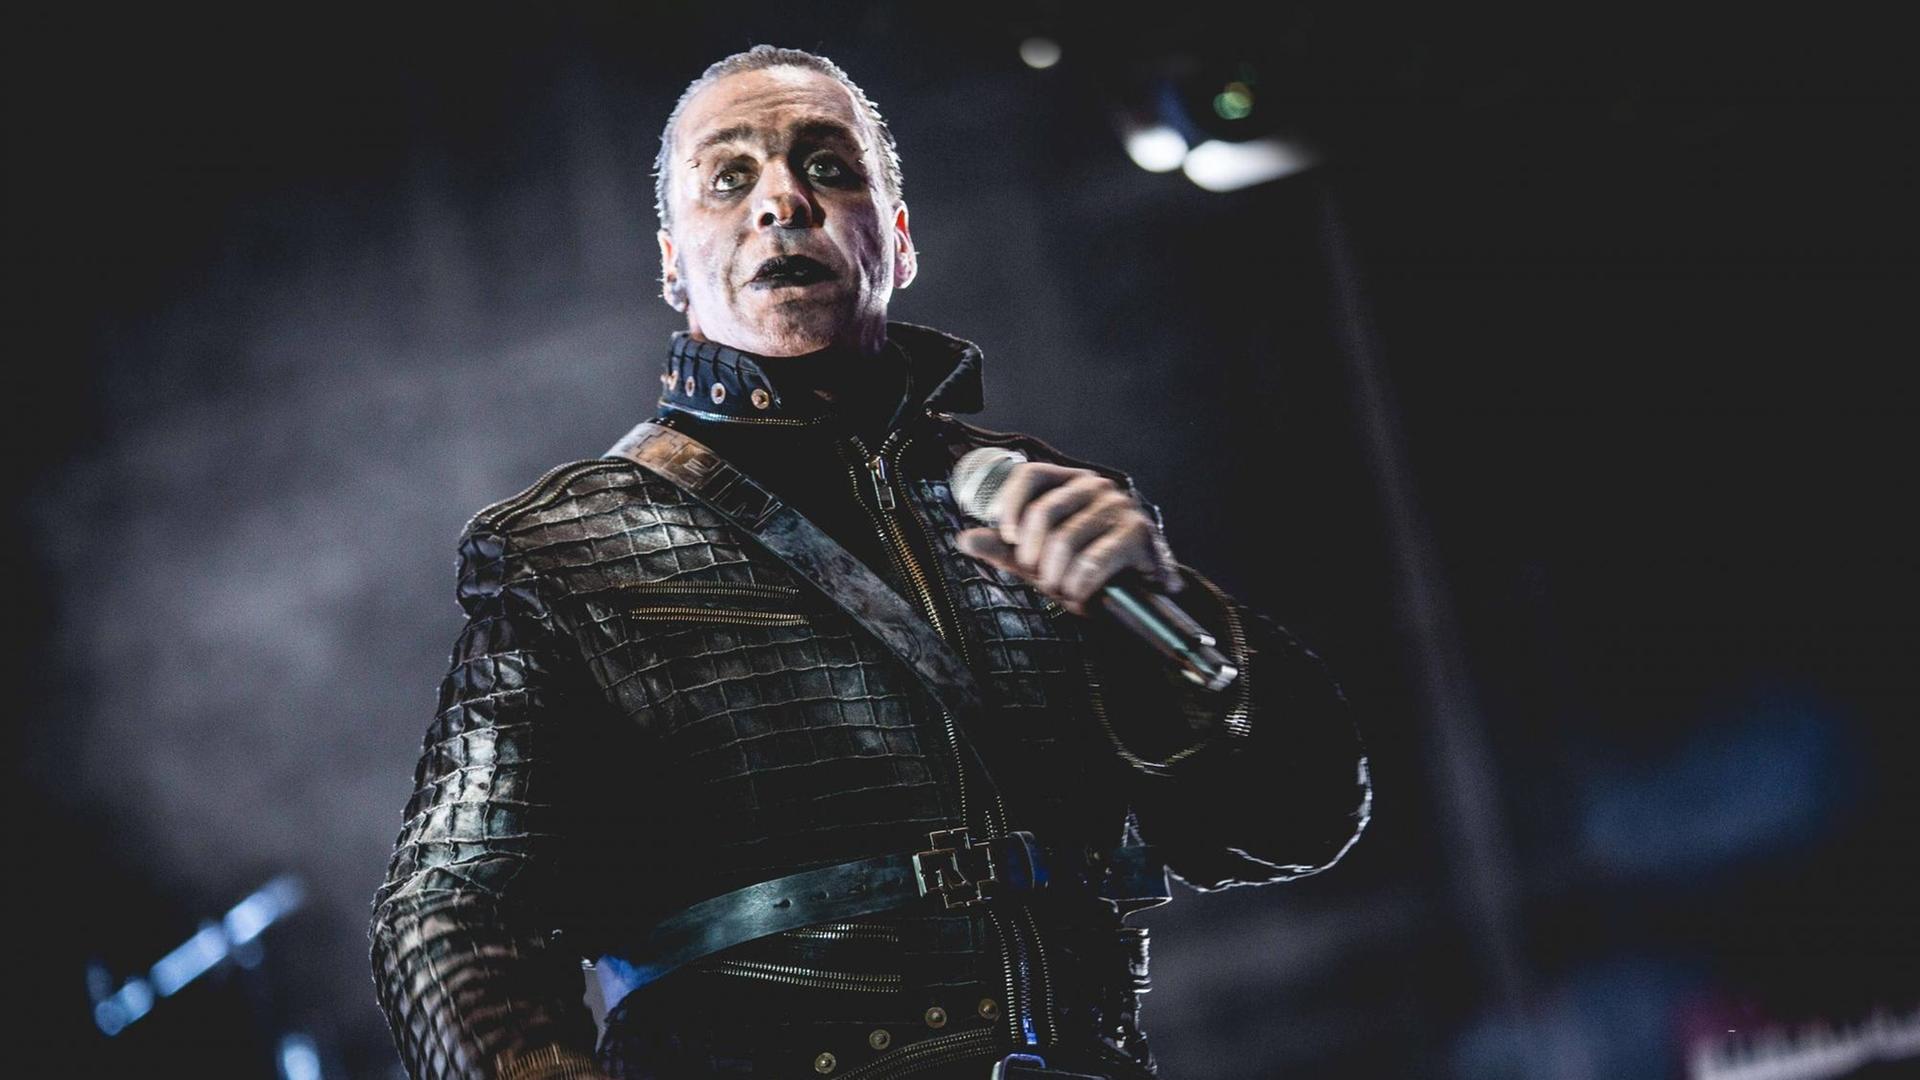 Der Sänger Till Lindemann düster geschminkt und mit Leder bekleidet steht auf der Bühne.